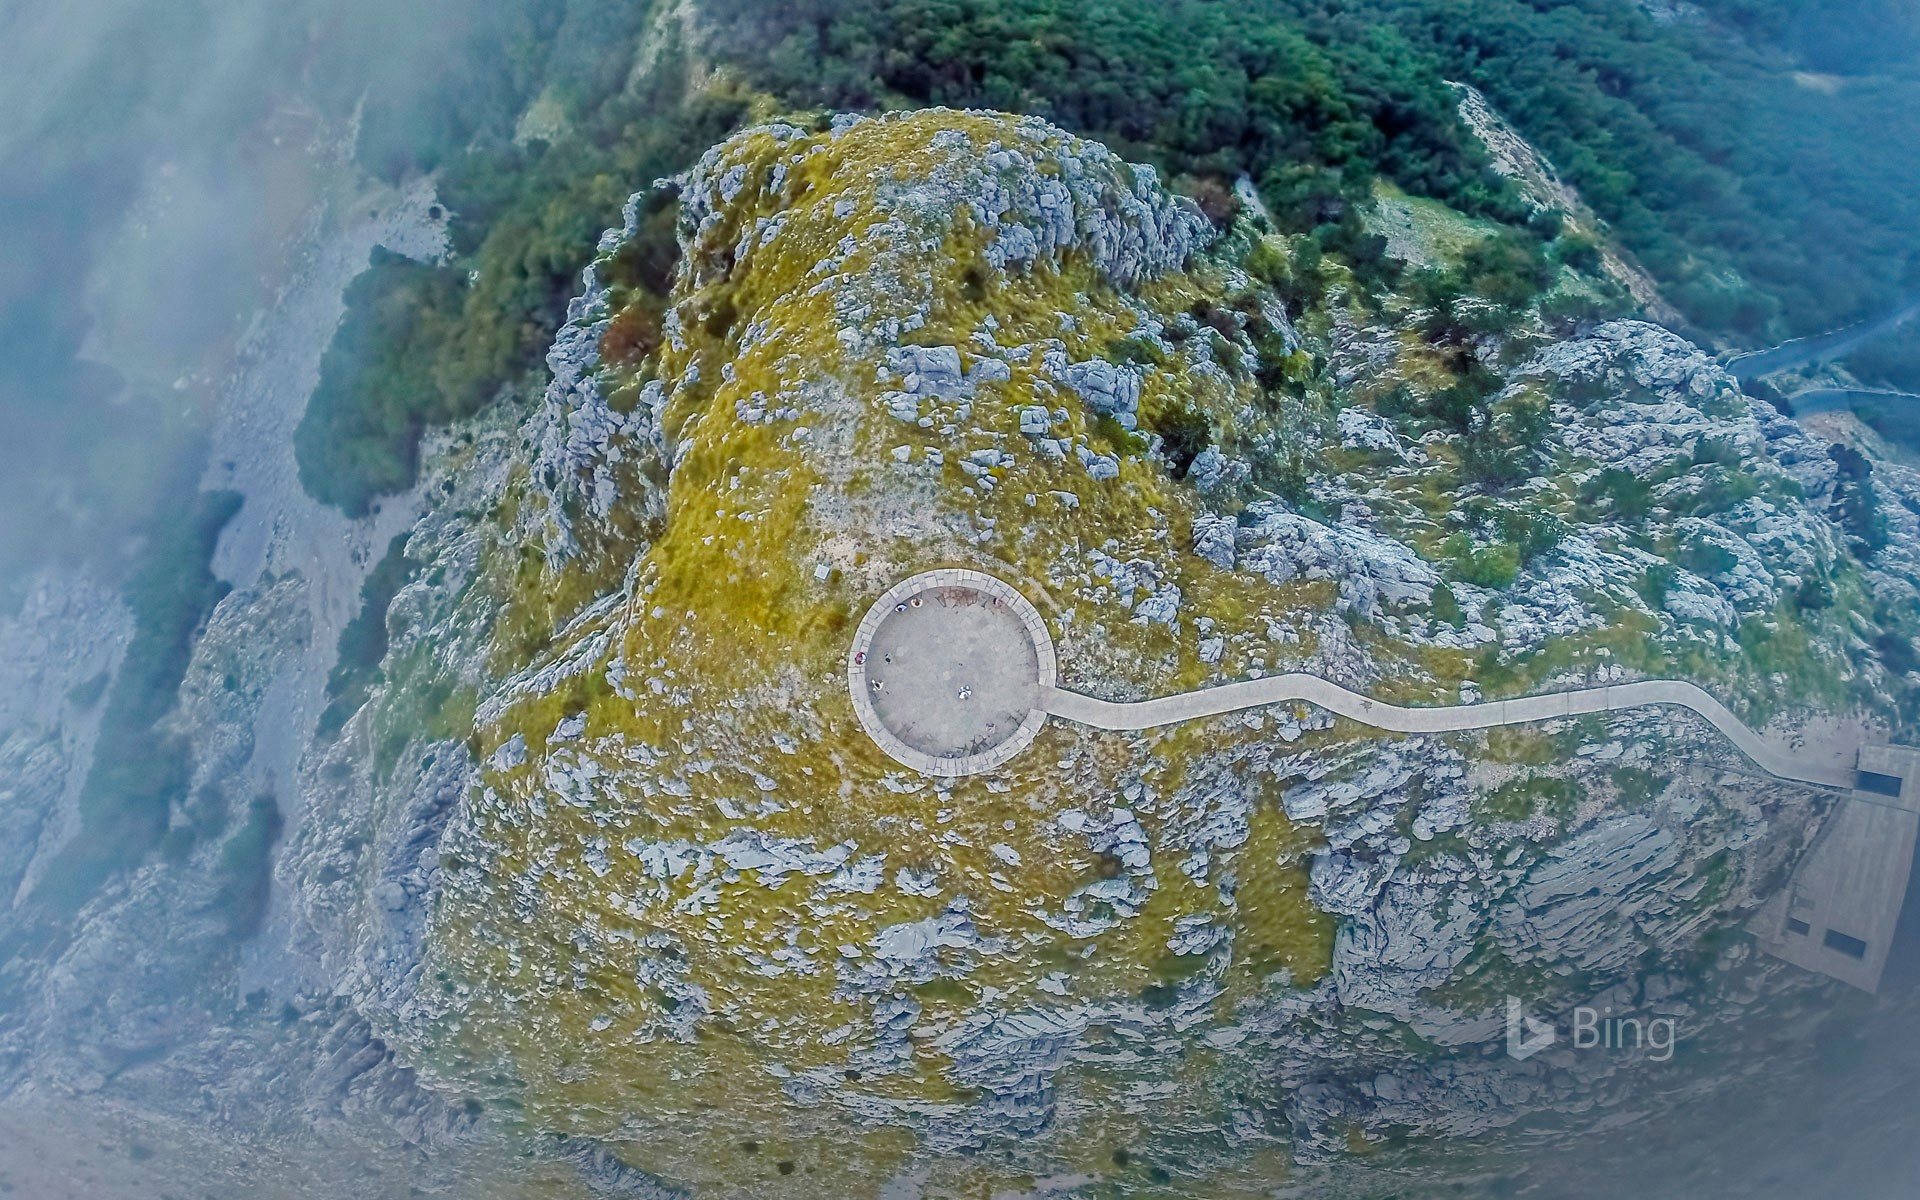 Njegoš’s Mausoleum in Lovćen National Park, Montenegro